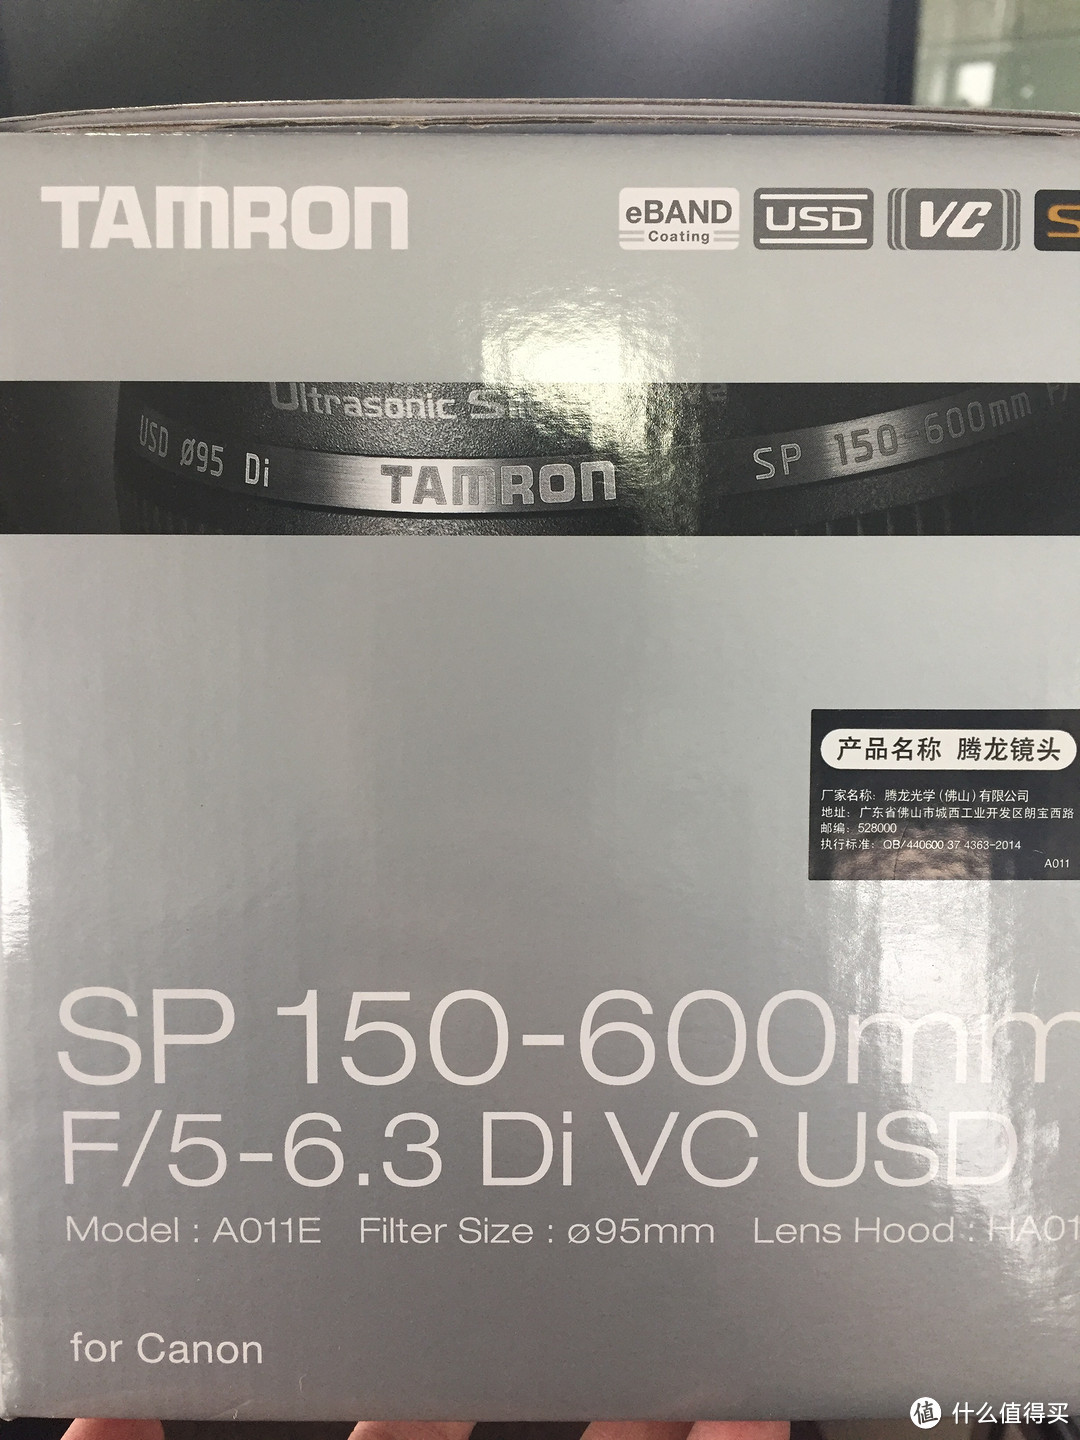 平民的“大炮”——Tamron 腾龙 A011 SP150-600mmf/5-6.3 Di VC USD 开箱及一众“附件”